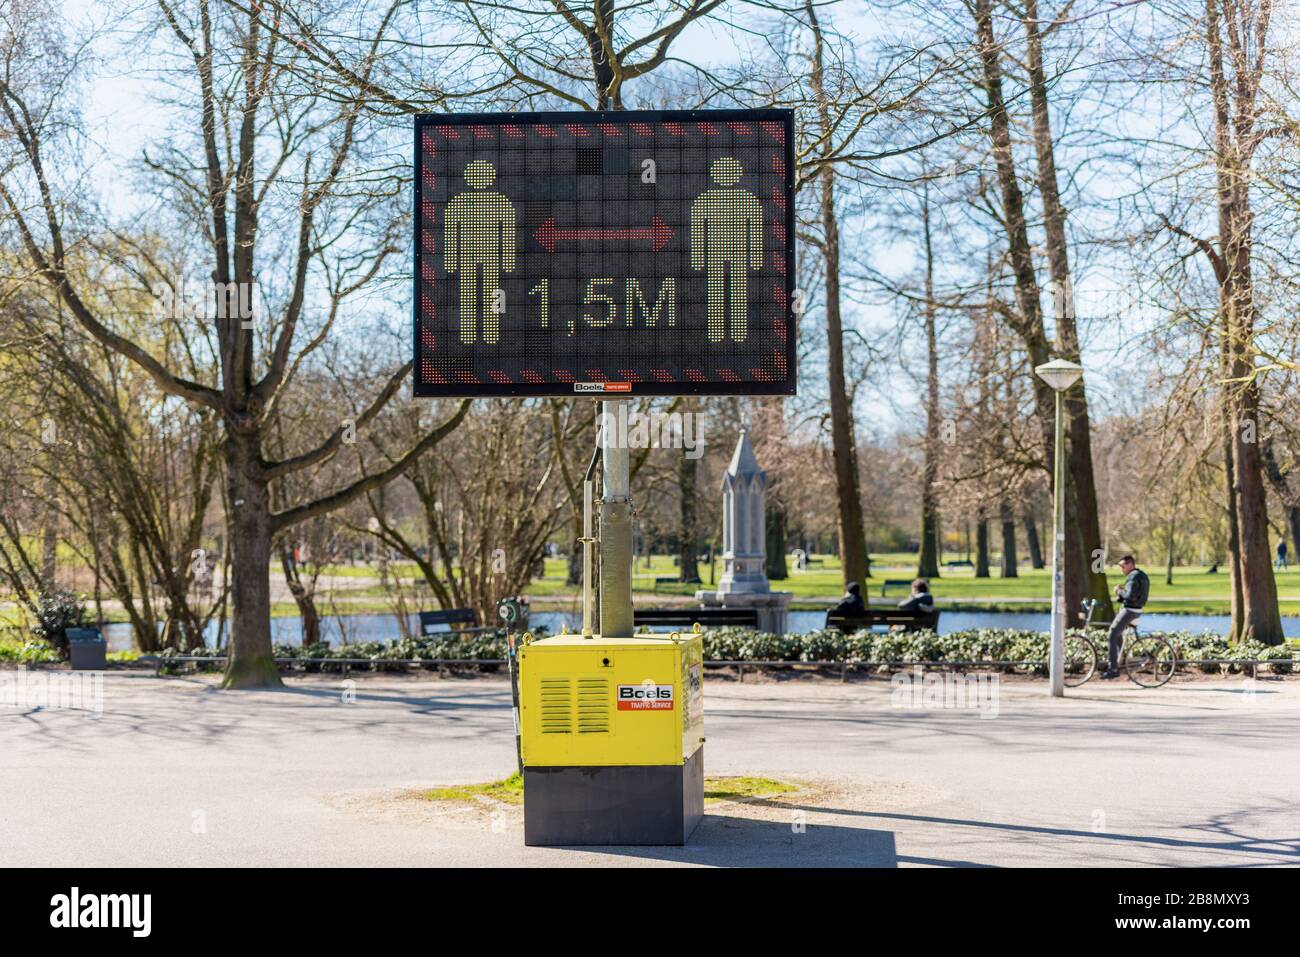 Gardez une distance de 1,5 mètre signe d'avertissement sur l'affichage numérique dans un parc public, rappelant aux gens de distancer les réseaux sociaux et évitant la propagation du coronavirus Banque D'Images